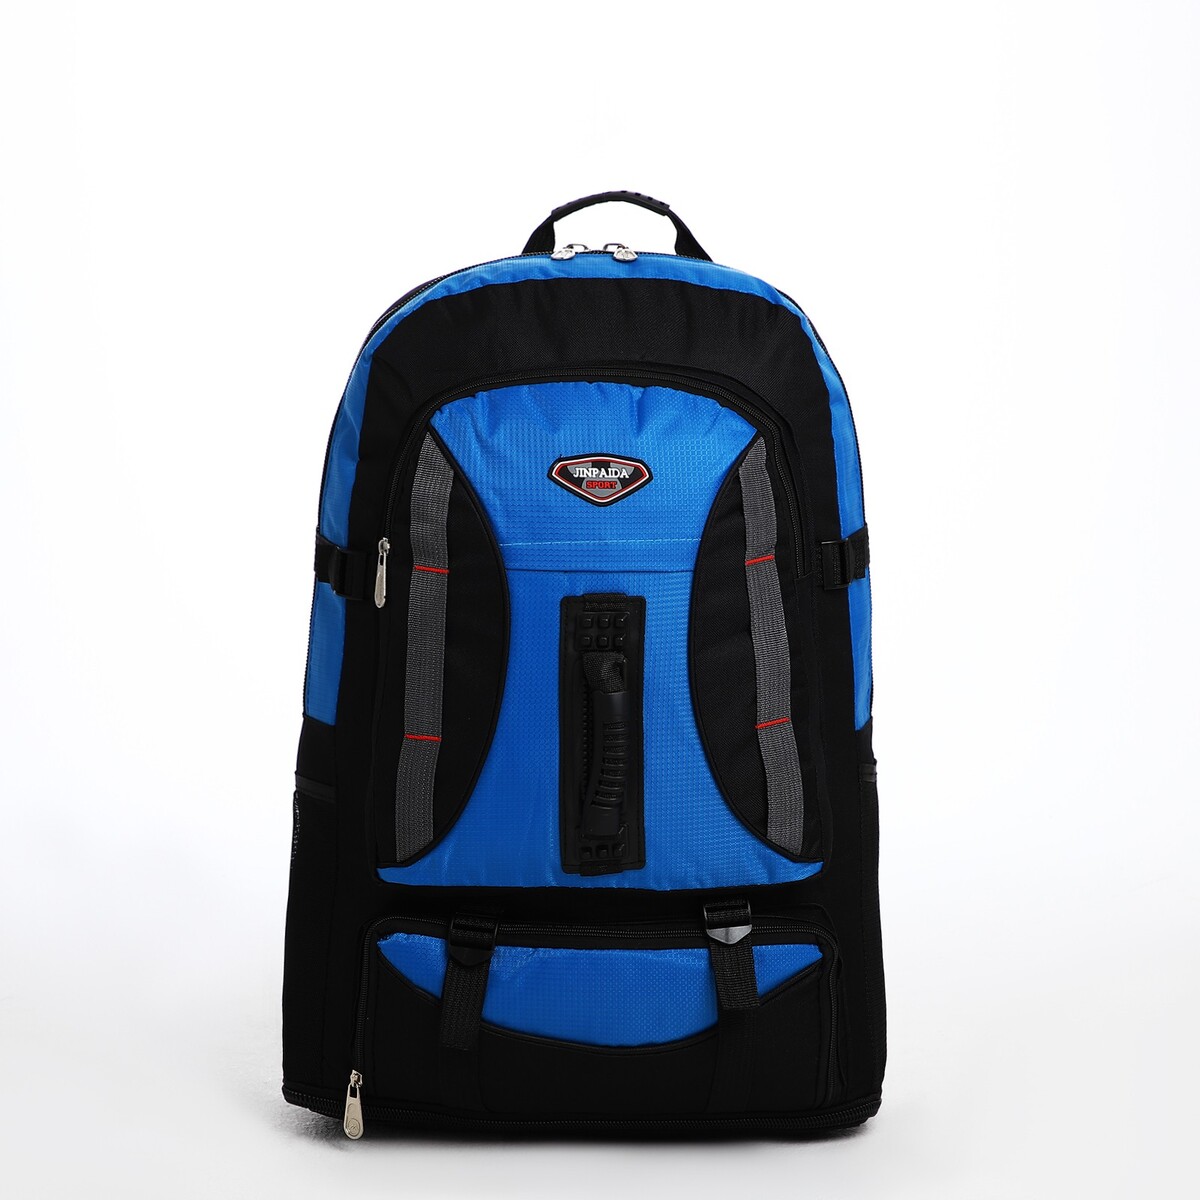 Рюкзак туристический на молнии, 4 наружных кармана, цвет синий/черный рюкзак на молнии 2 наружных кармана синий